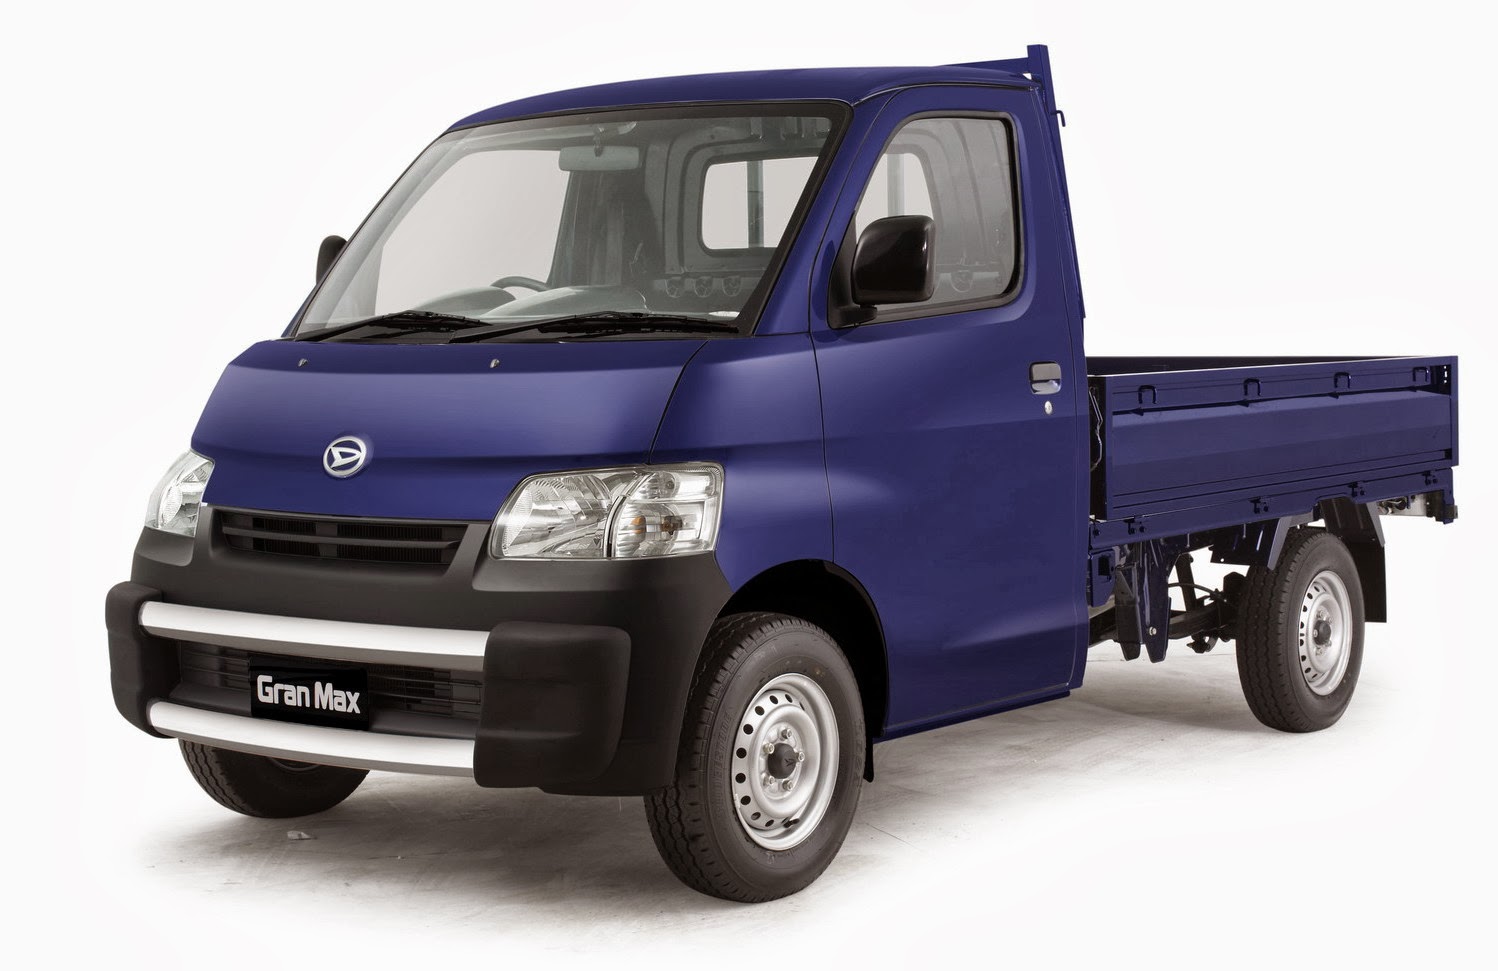 Info Lengkap Spesifikasi dan Jenis Daihatsu Mobil Grand 